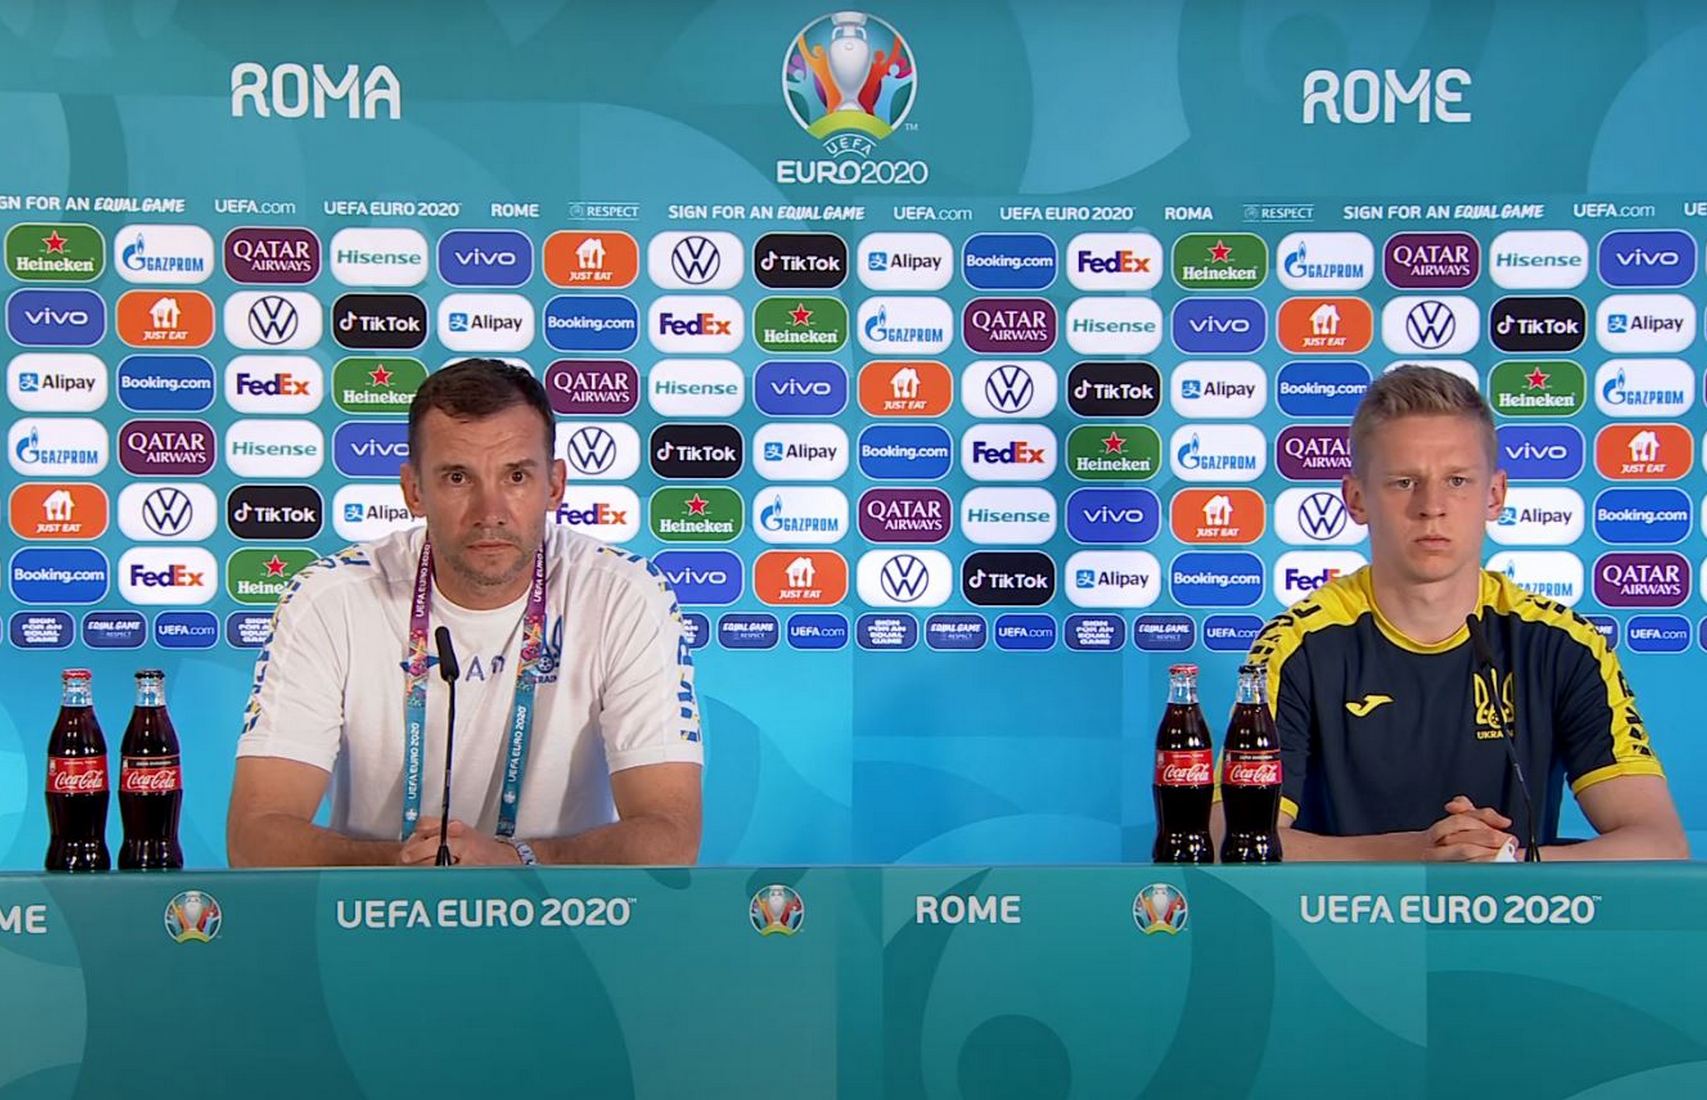 Перед матчем Украина — Англия Шевченко и Зинченко провели пресс-конференцию на русском языке (видео)